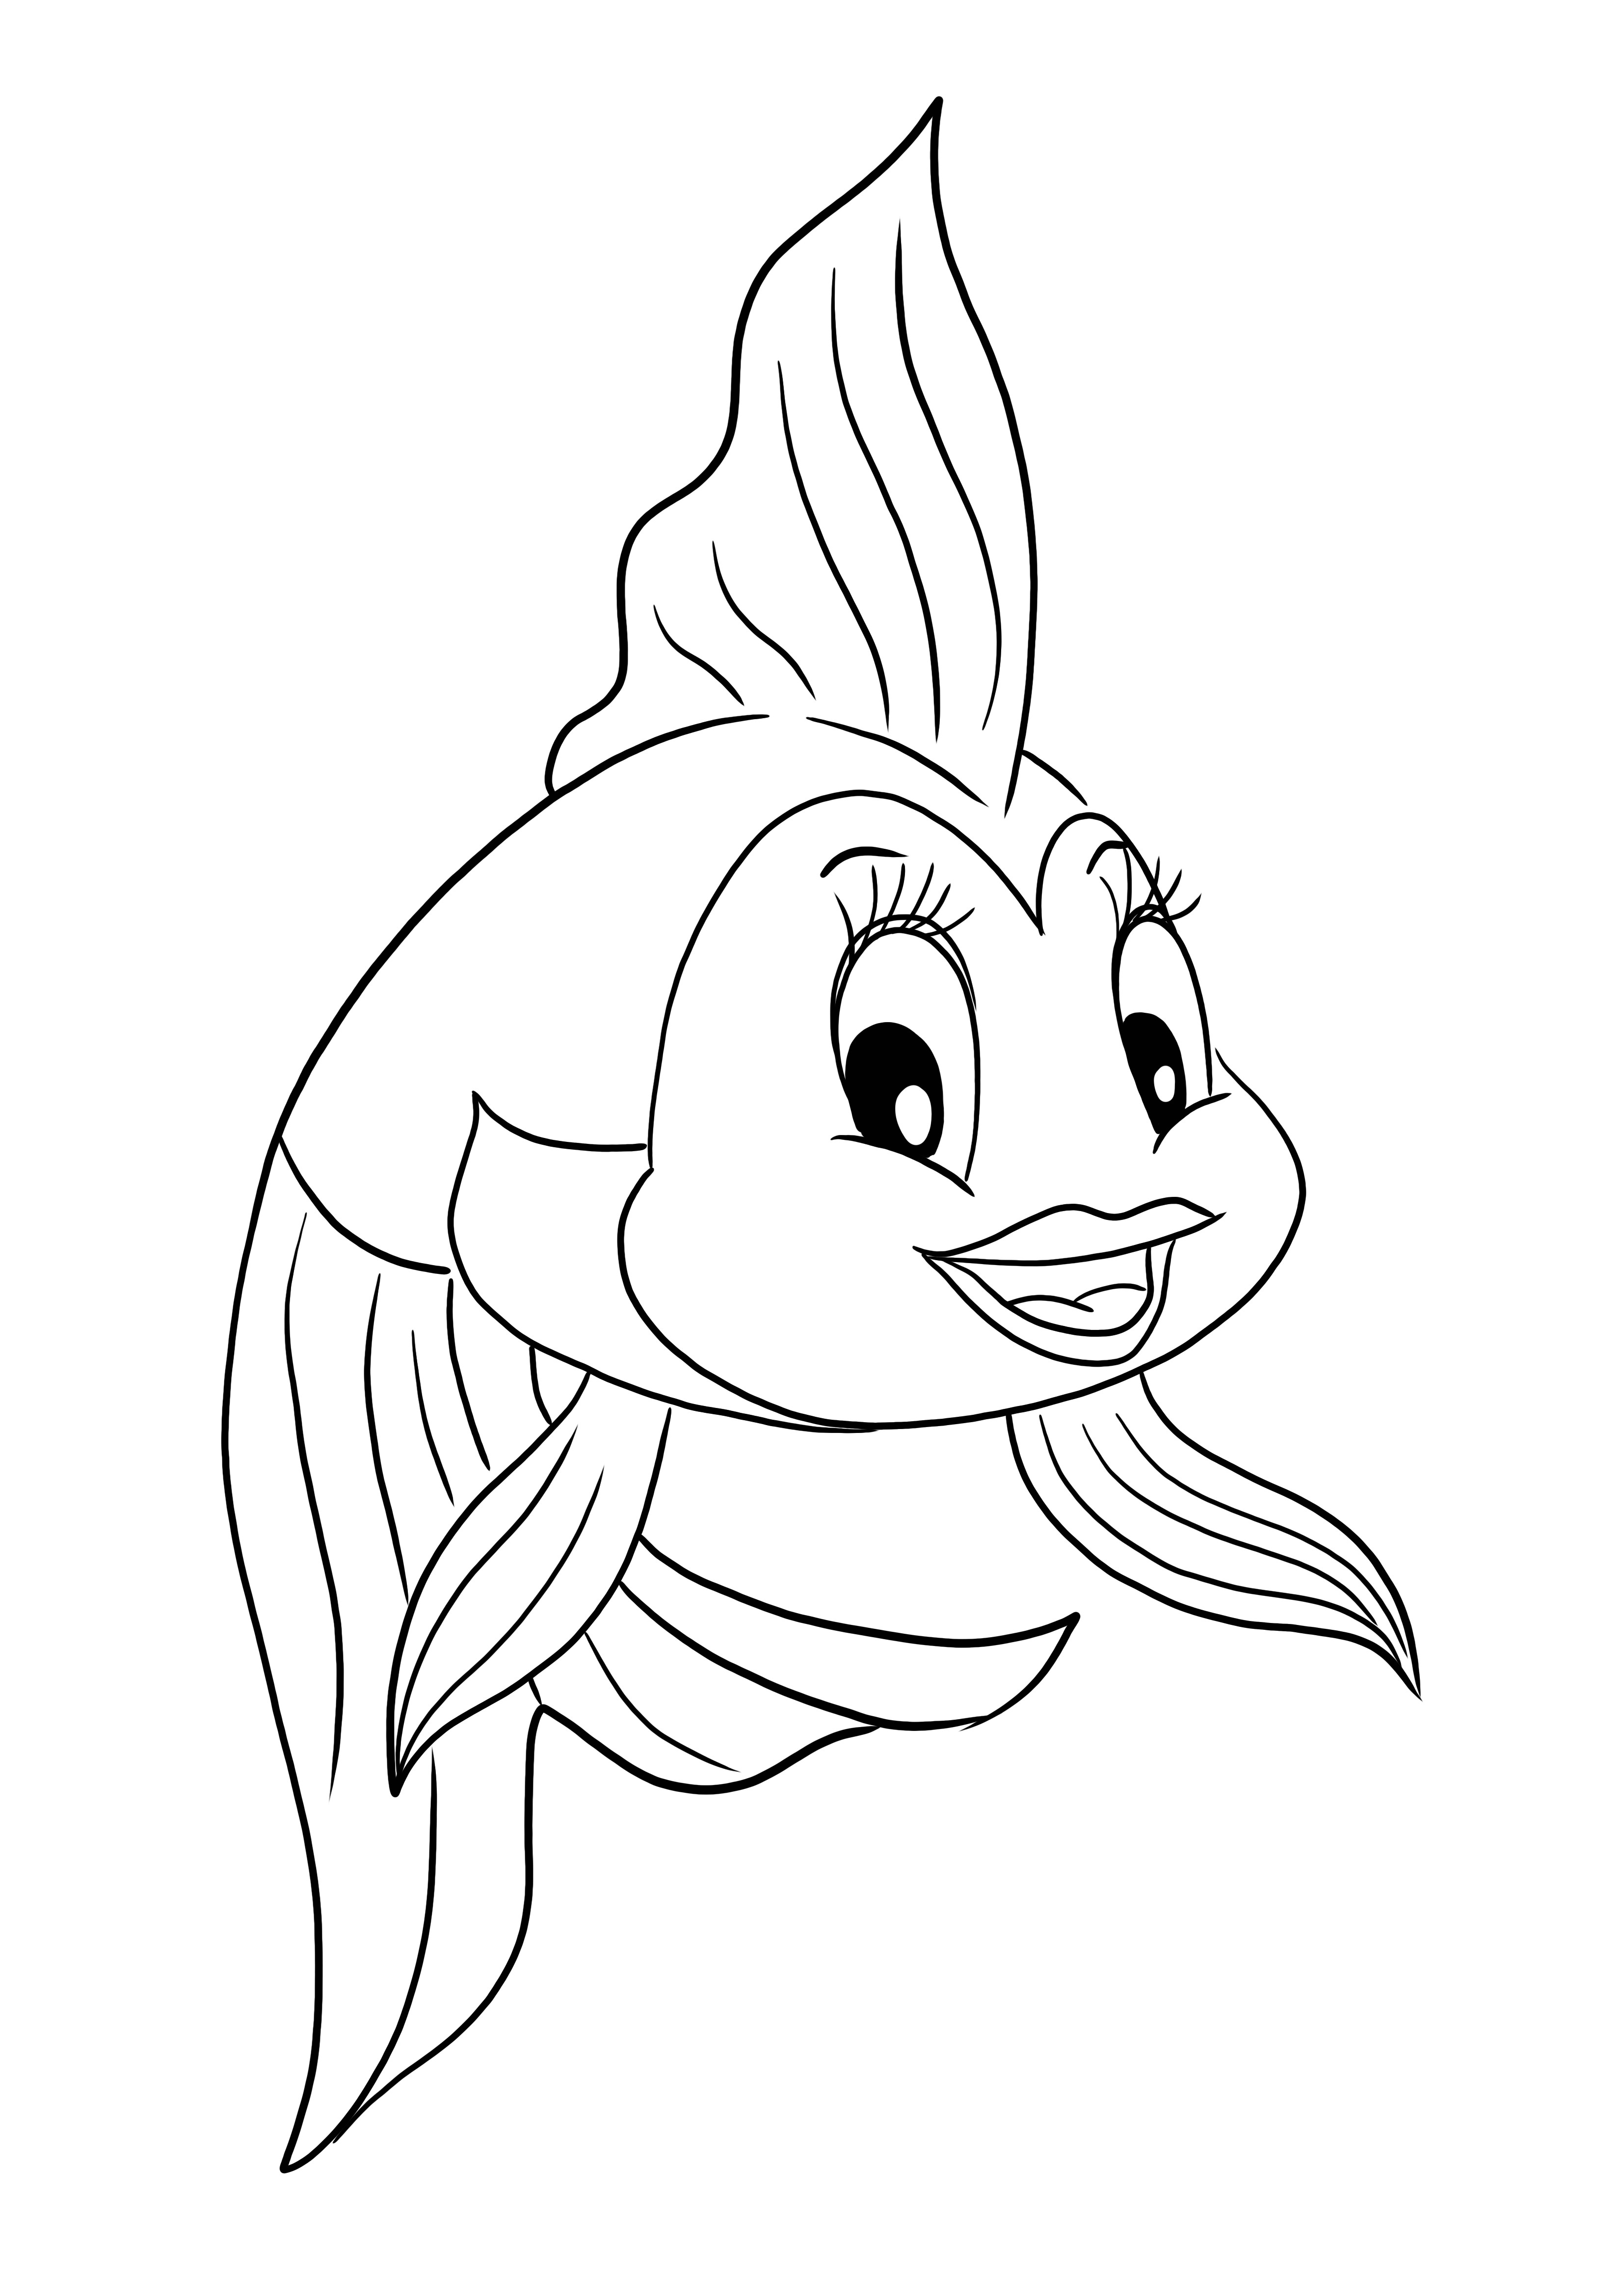 Una pagina da colorare e stampare gratis di Cleo il pesce dal cartone animato Pinocchio per bambini